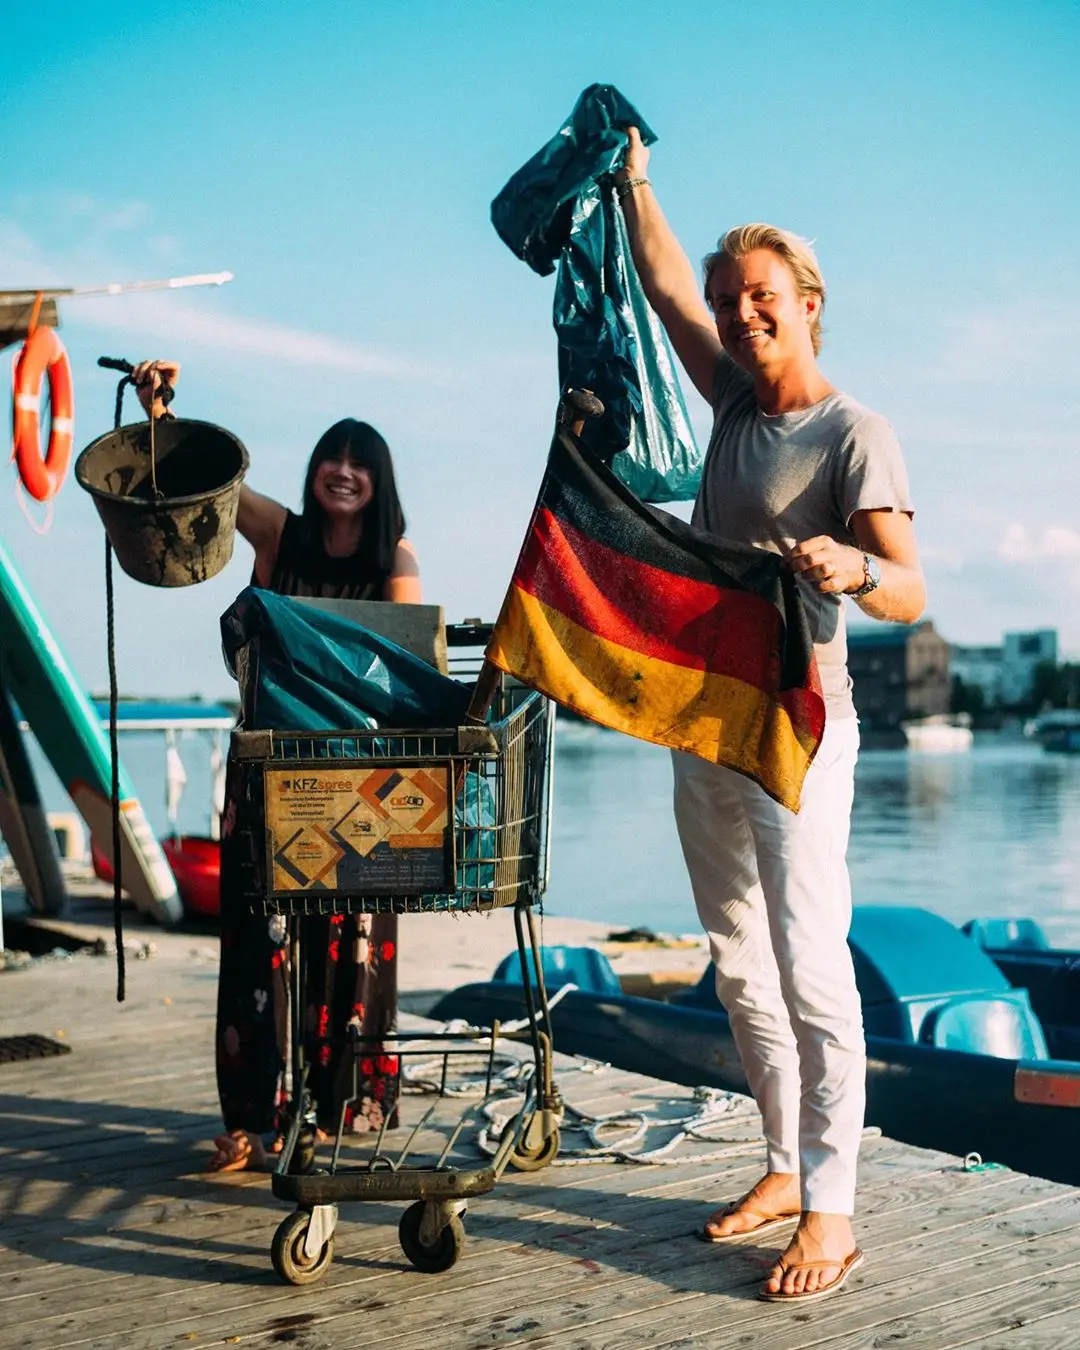 Нико Росберг вычистил целый мешок мусора из берлинской реки. Плавал по ней на лодке и собирал отбросы